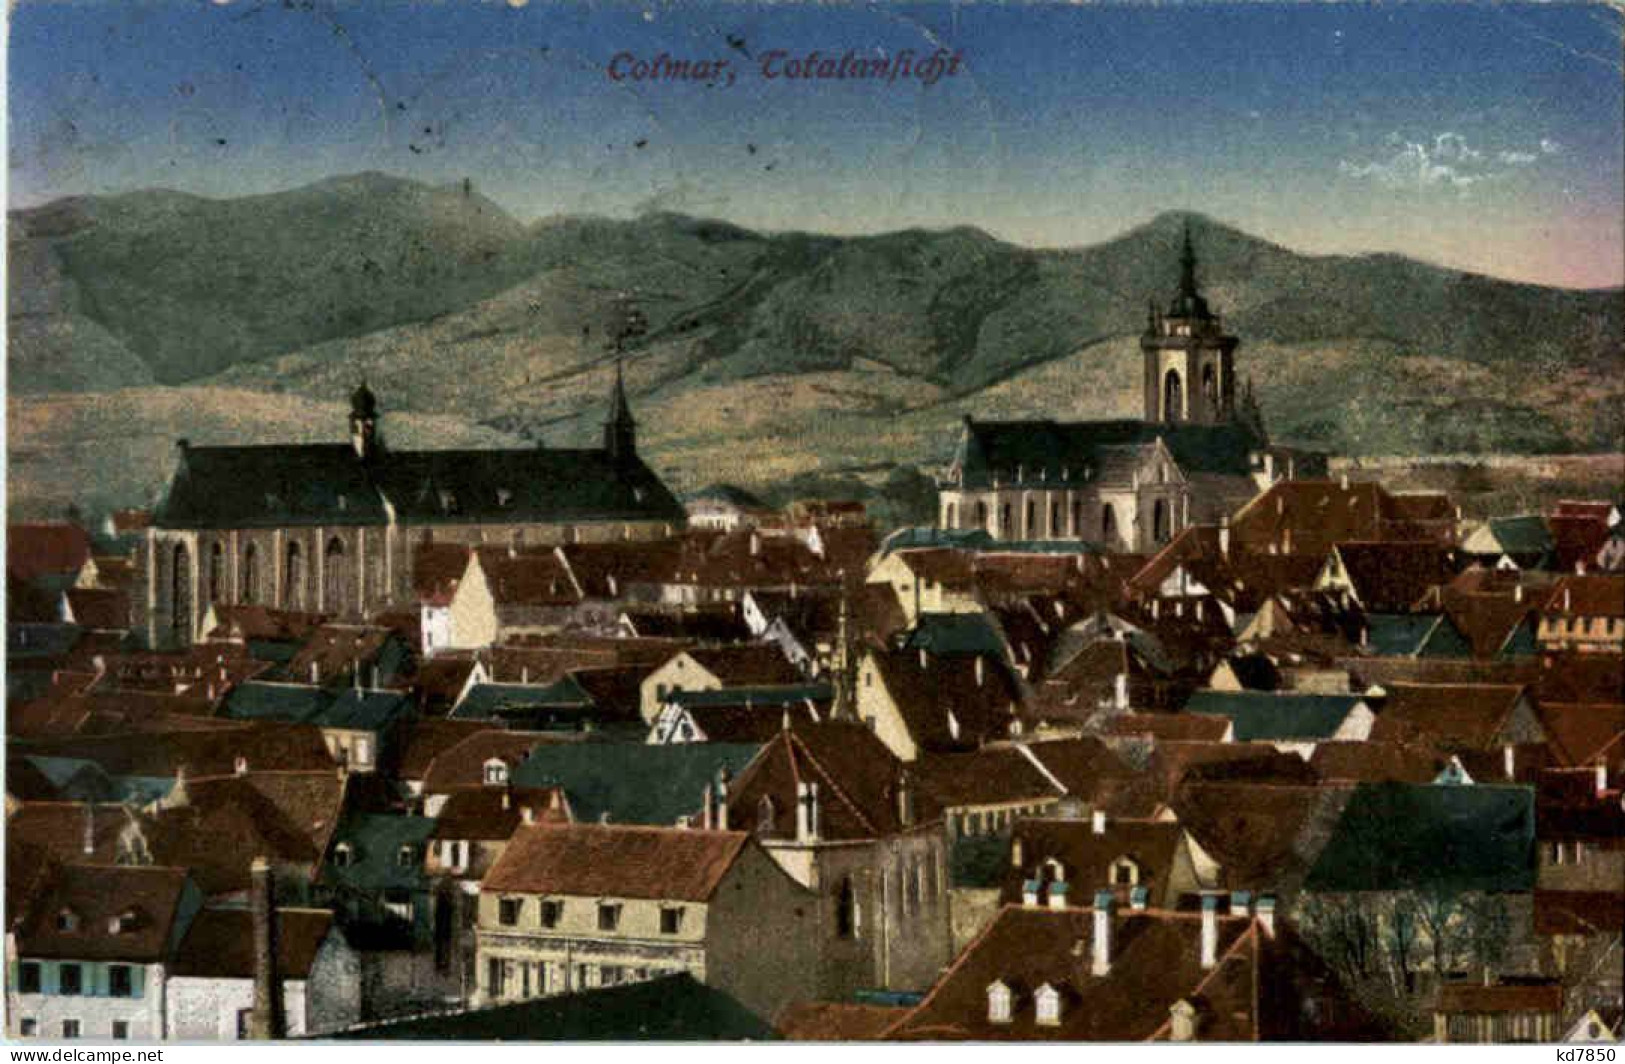 Colmar - Colmar